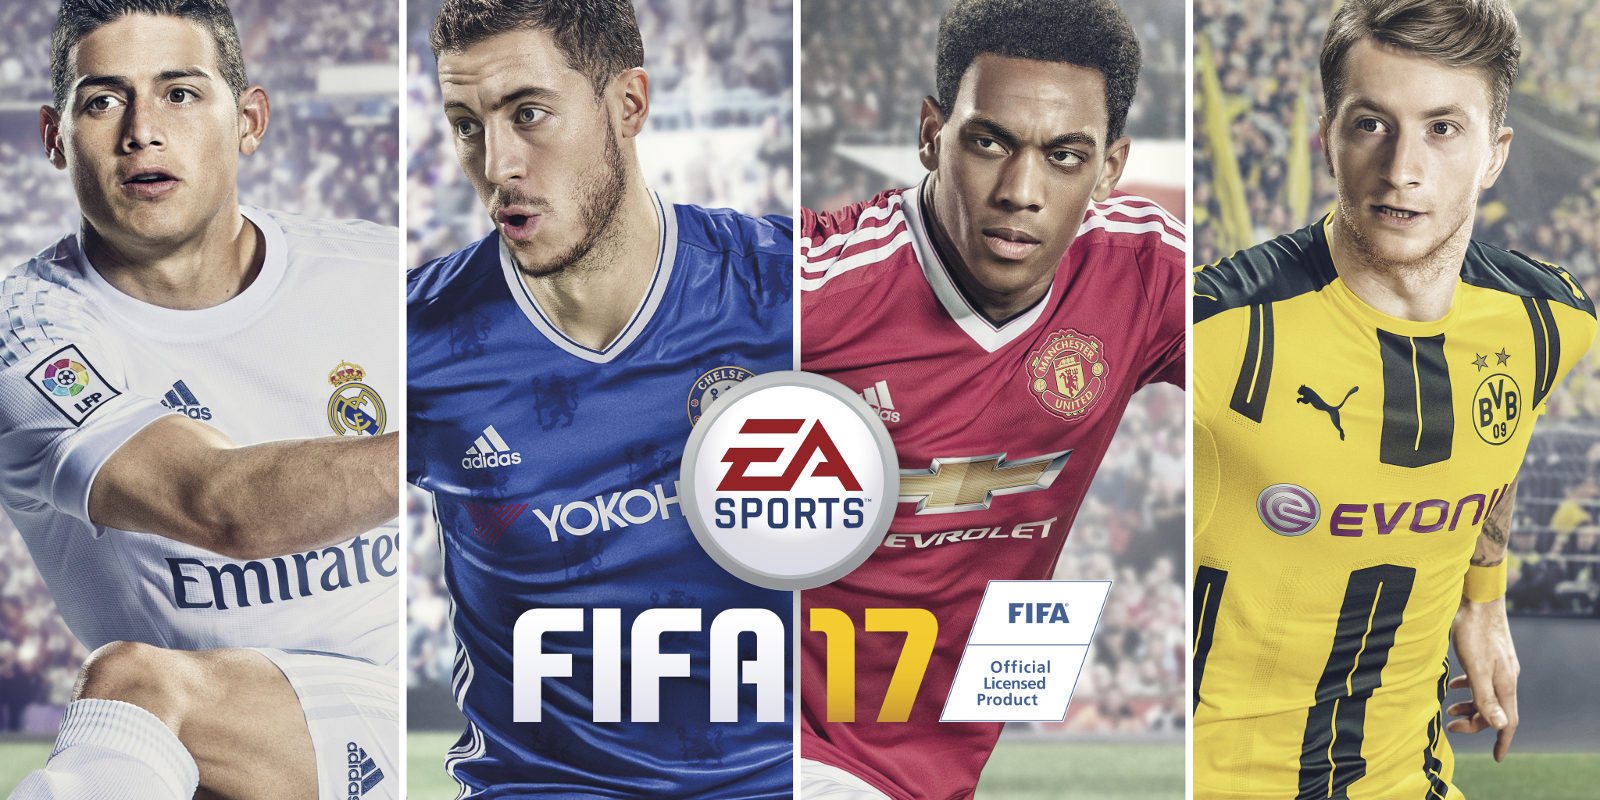 Ya disponible la demo de 'FIFA 17'